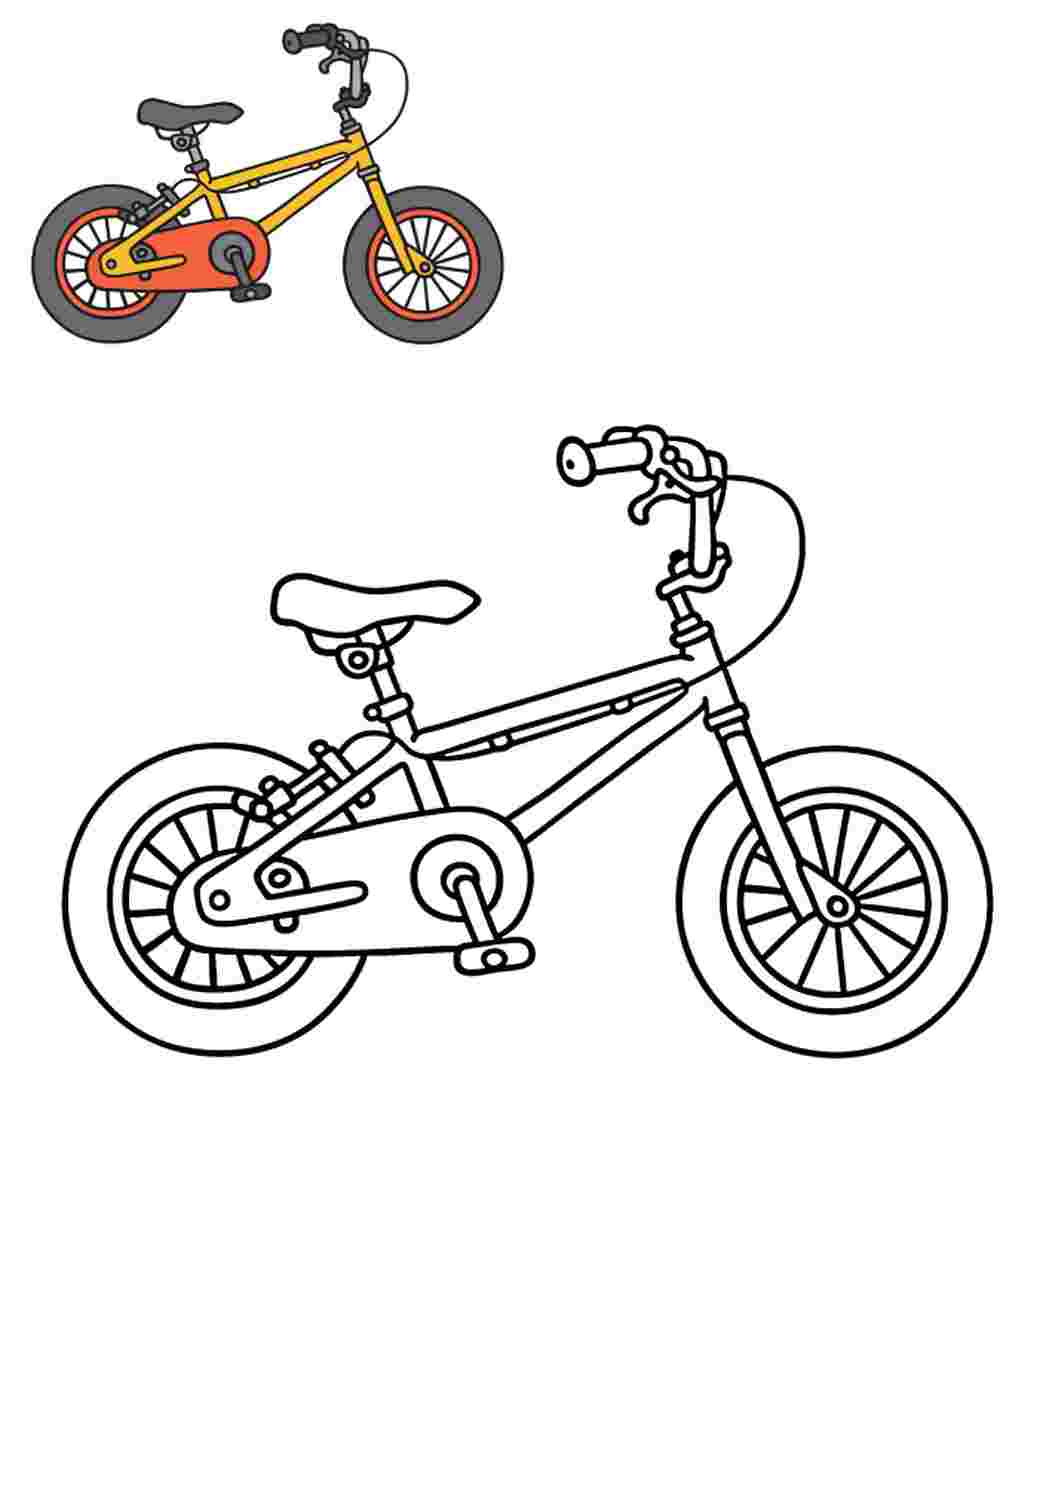 Велосипед для раскрашивания для детей